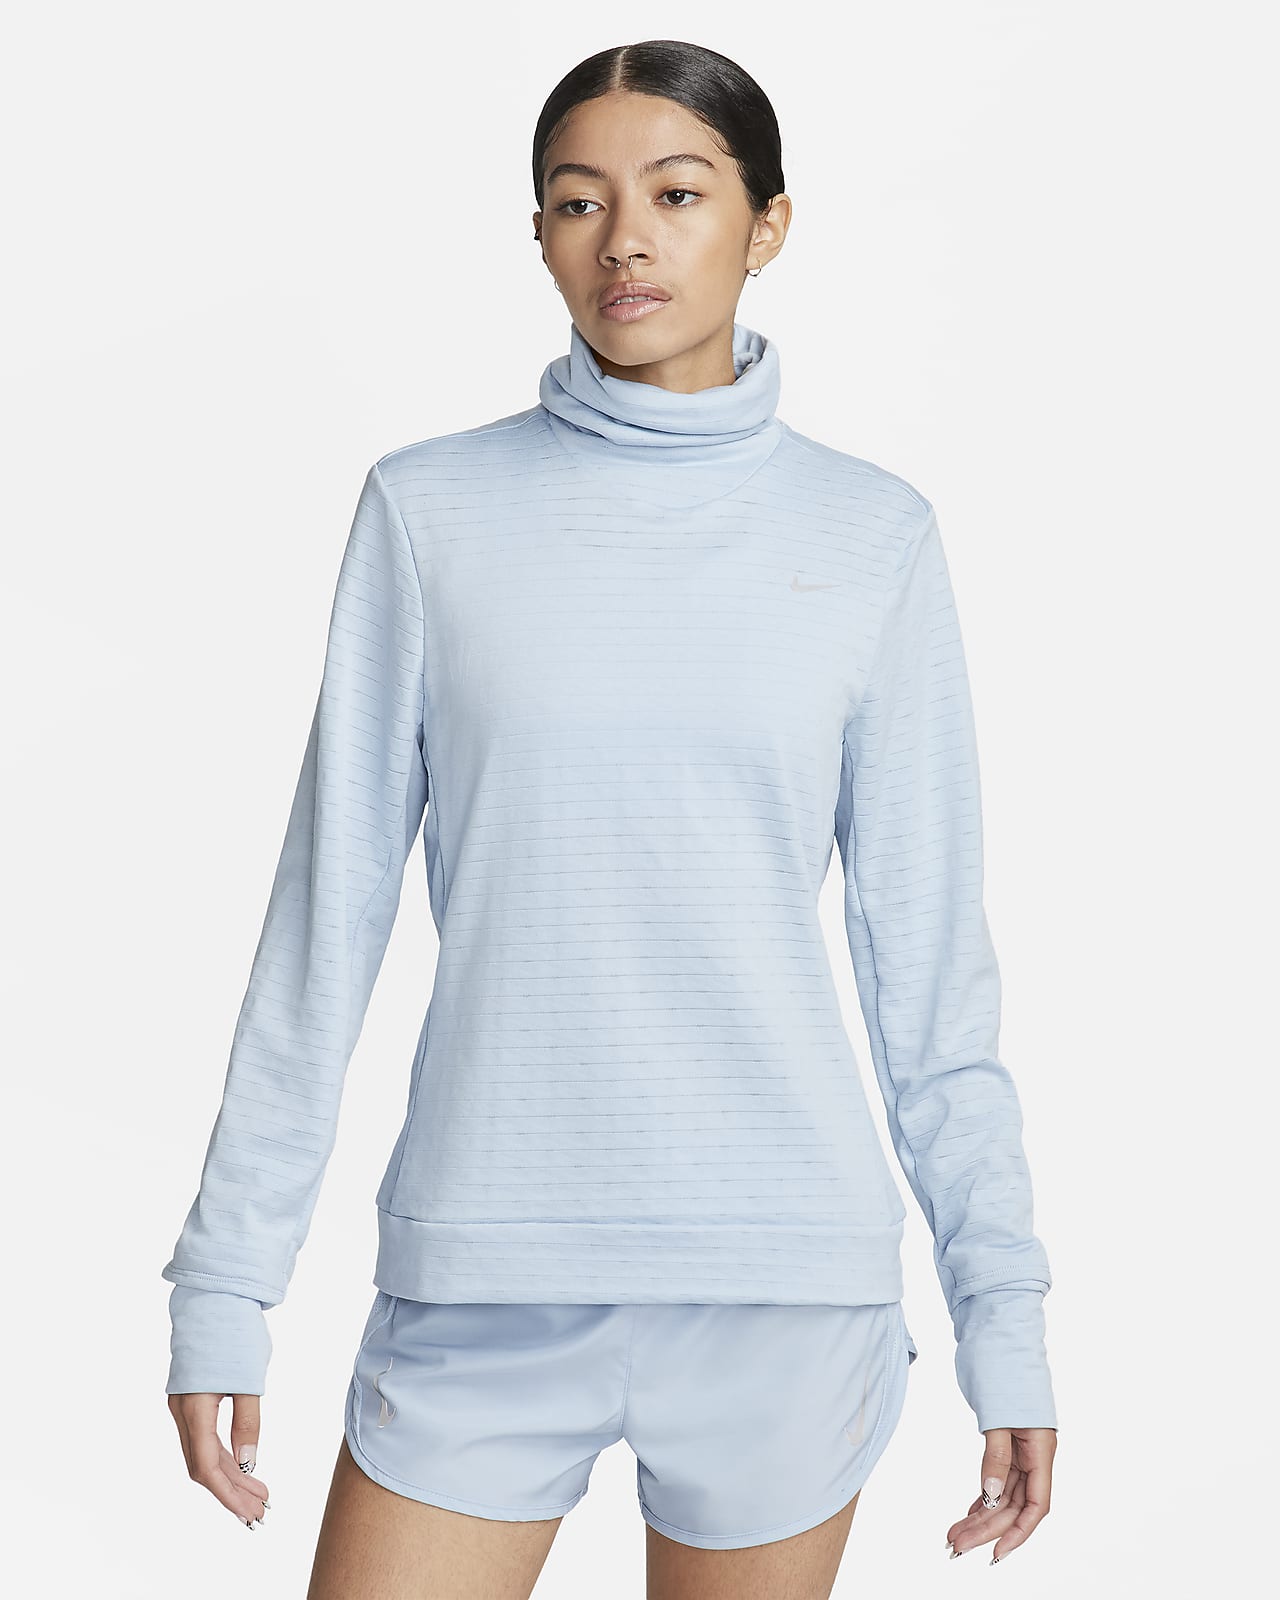 Γυναικεία μπλούζα ζιβάγκο για τρέξιμο Nike Therma-FIT Swift